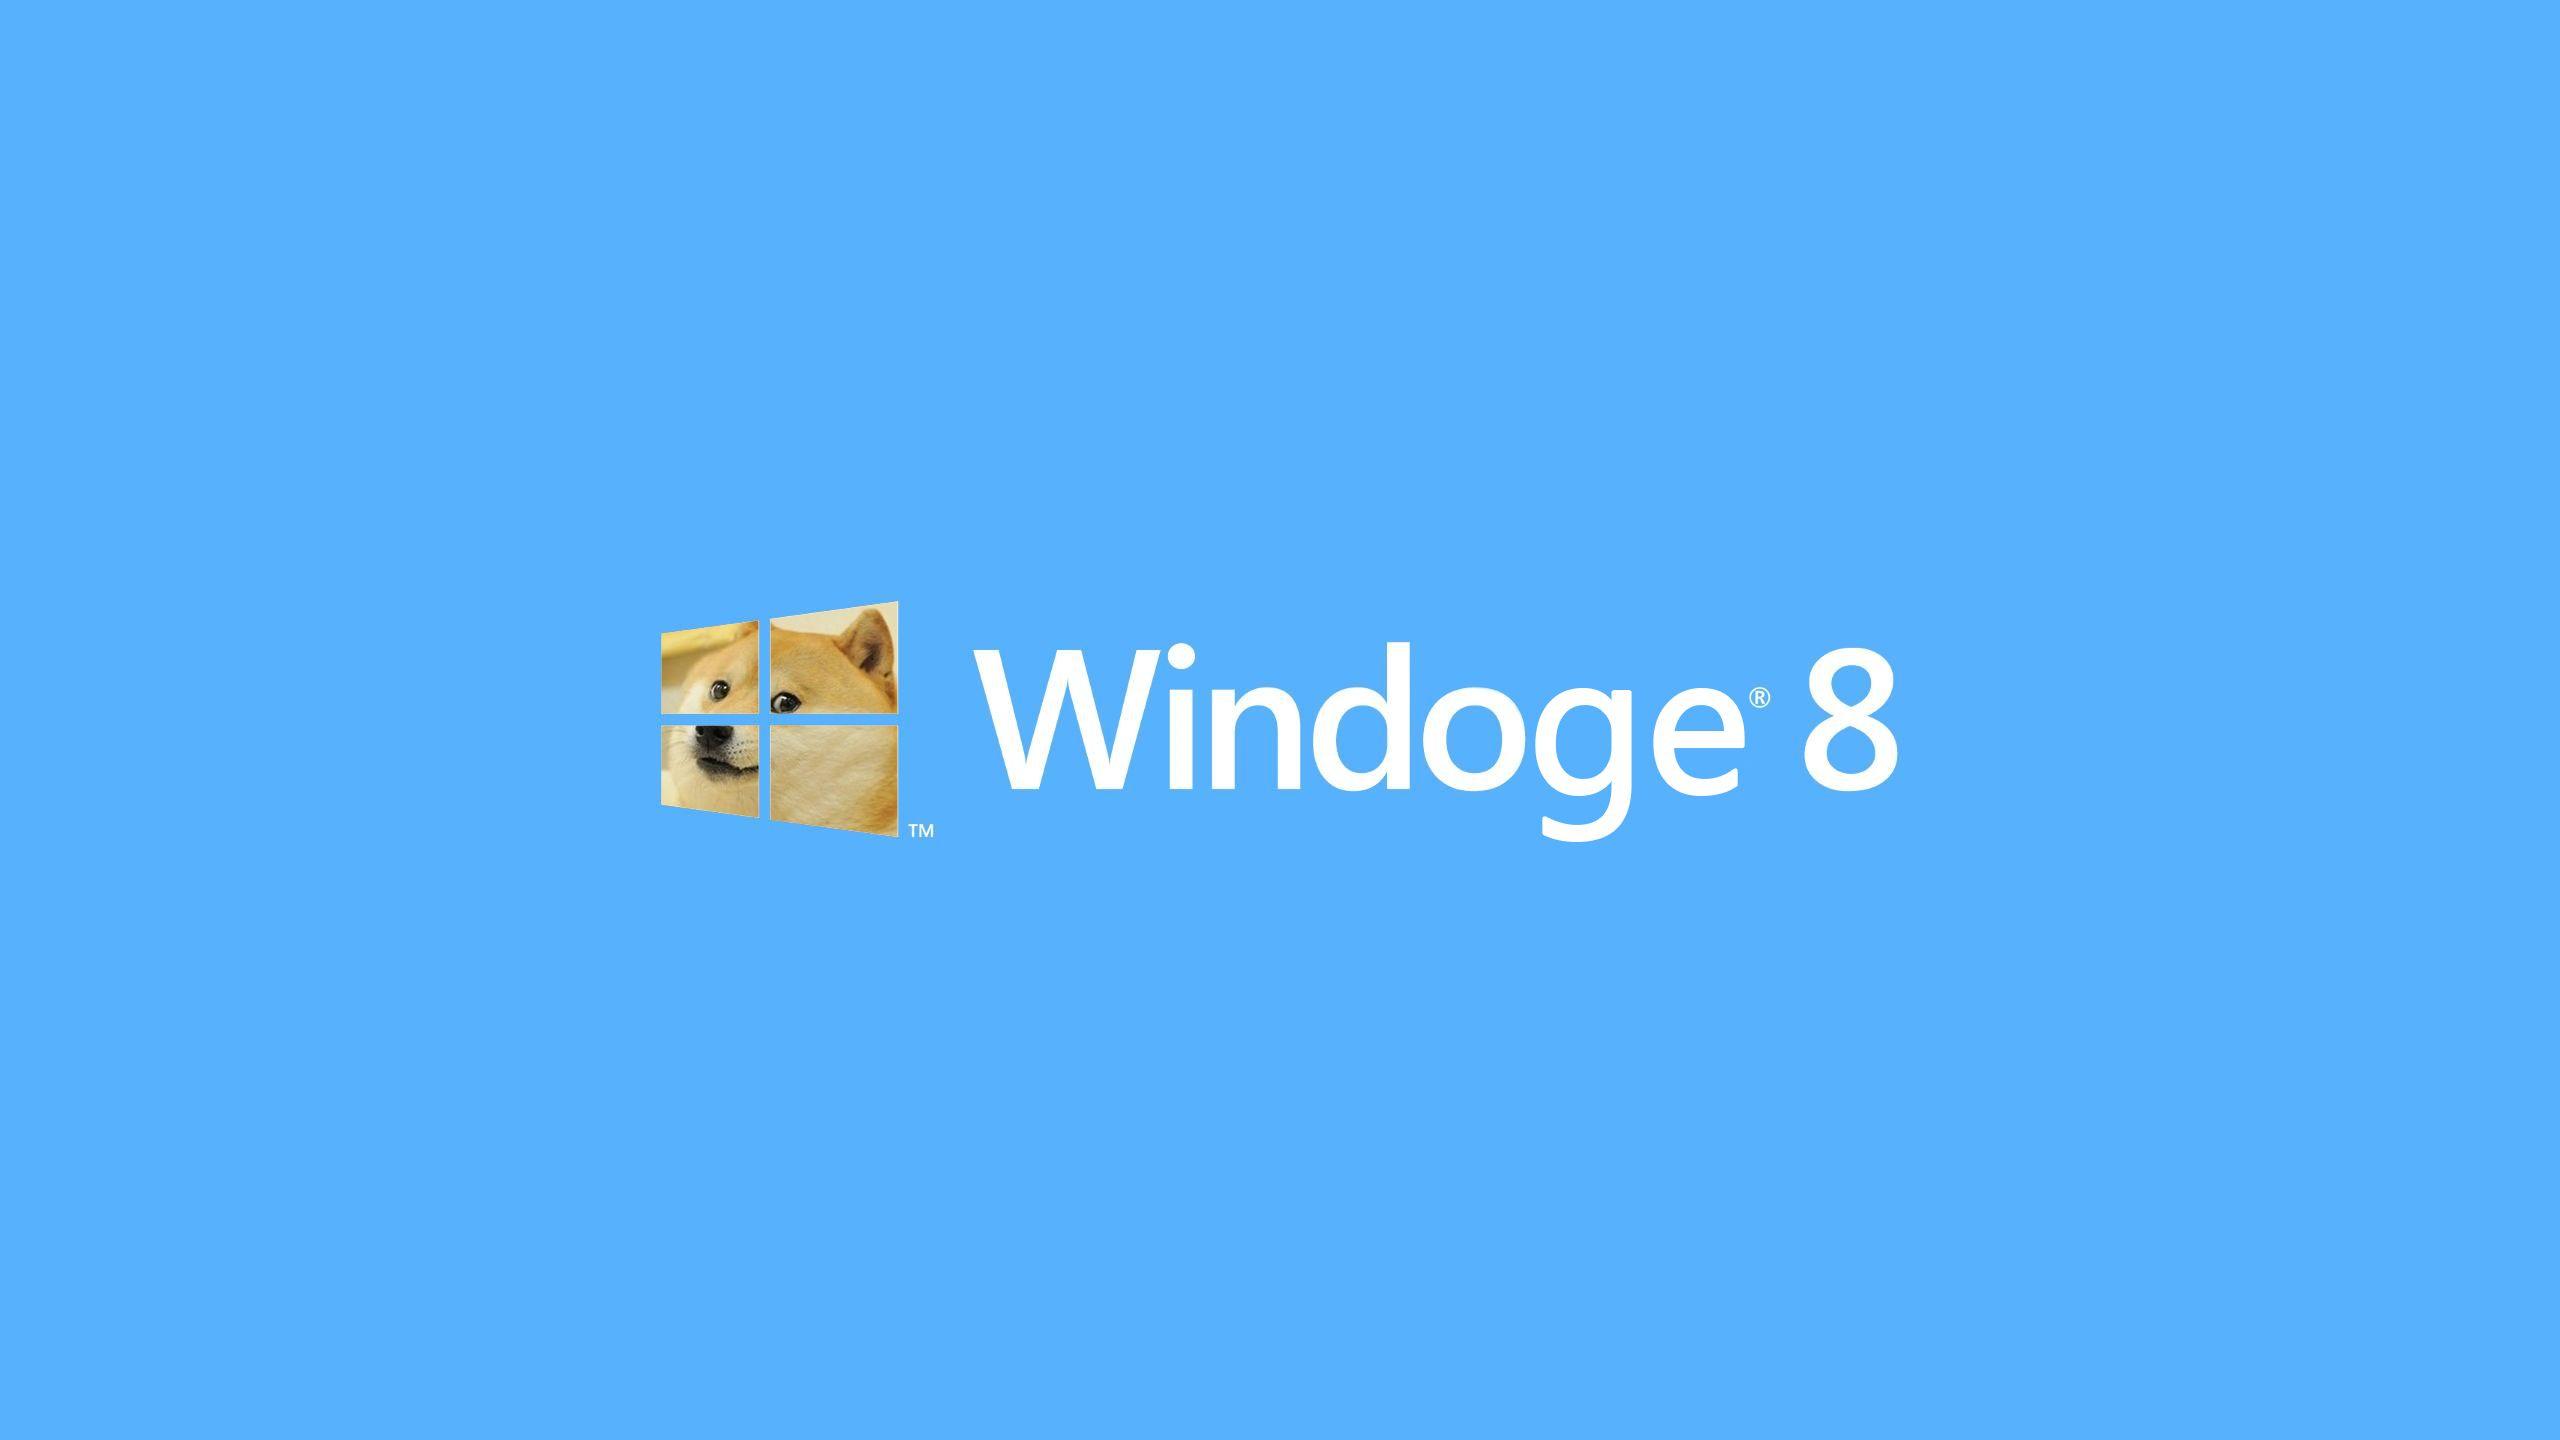 Windoge 8 DOGE Meme Wallpaper free desktop background and wallpaper